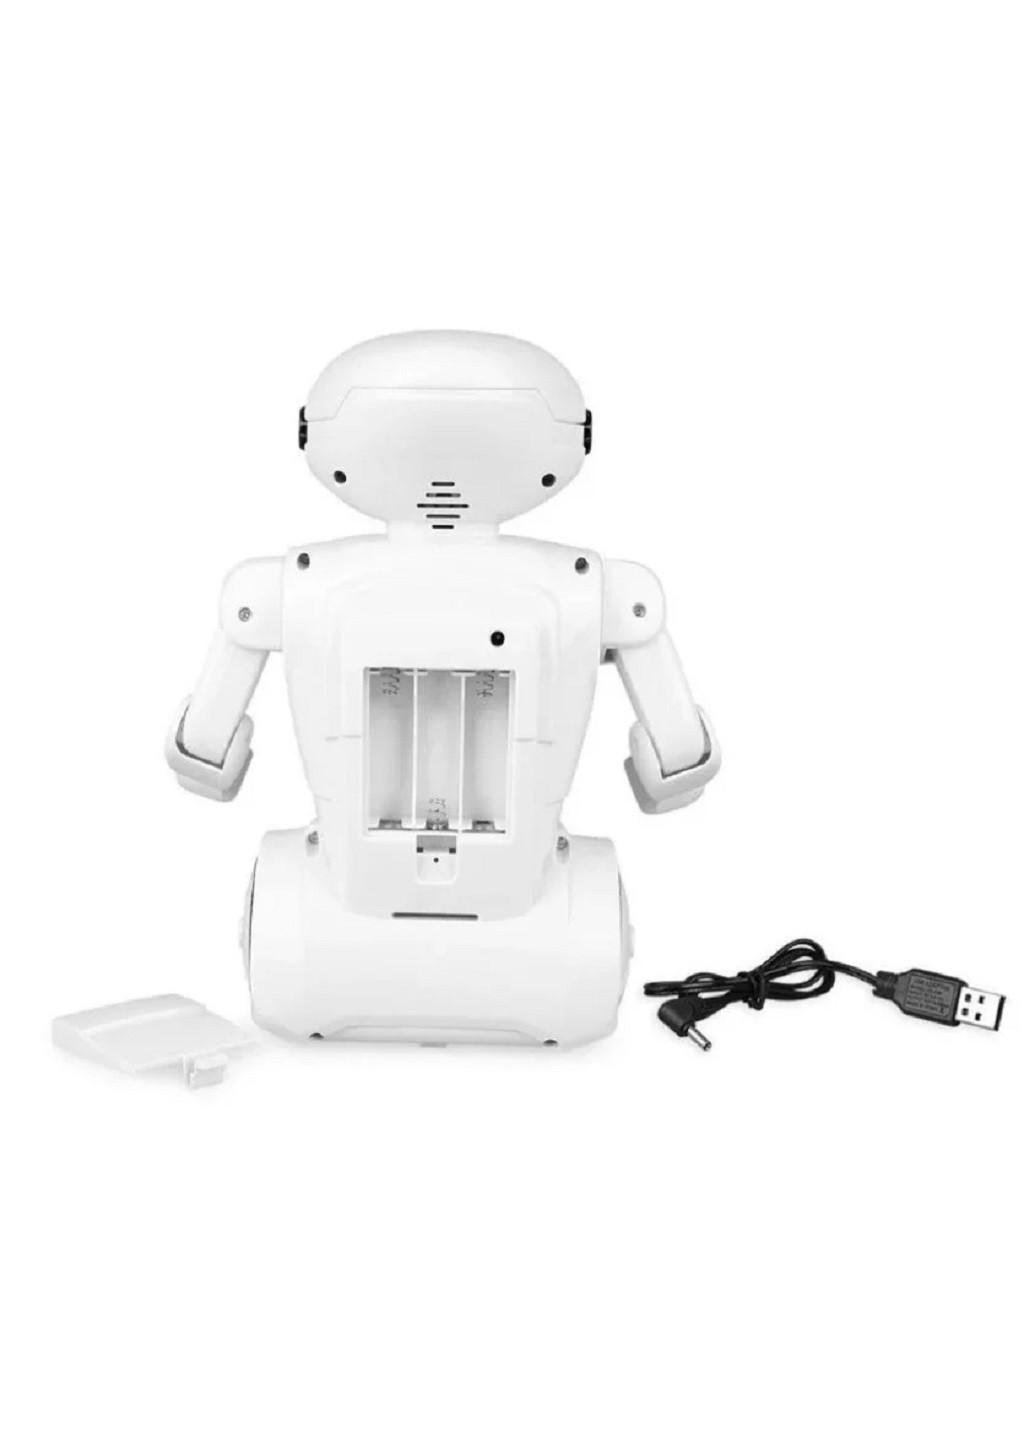 Интерактивная детская копилка сейф с кодовым замком и купюроприемником светильник Робот 25х18х9.5 см (30856-Нов) Francesco Marconi (251328985)